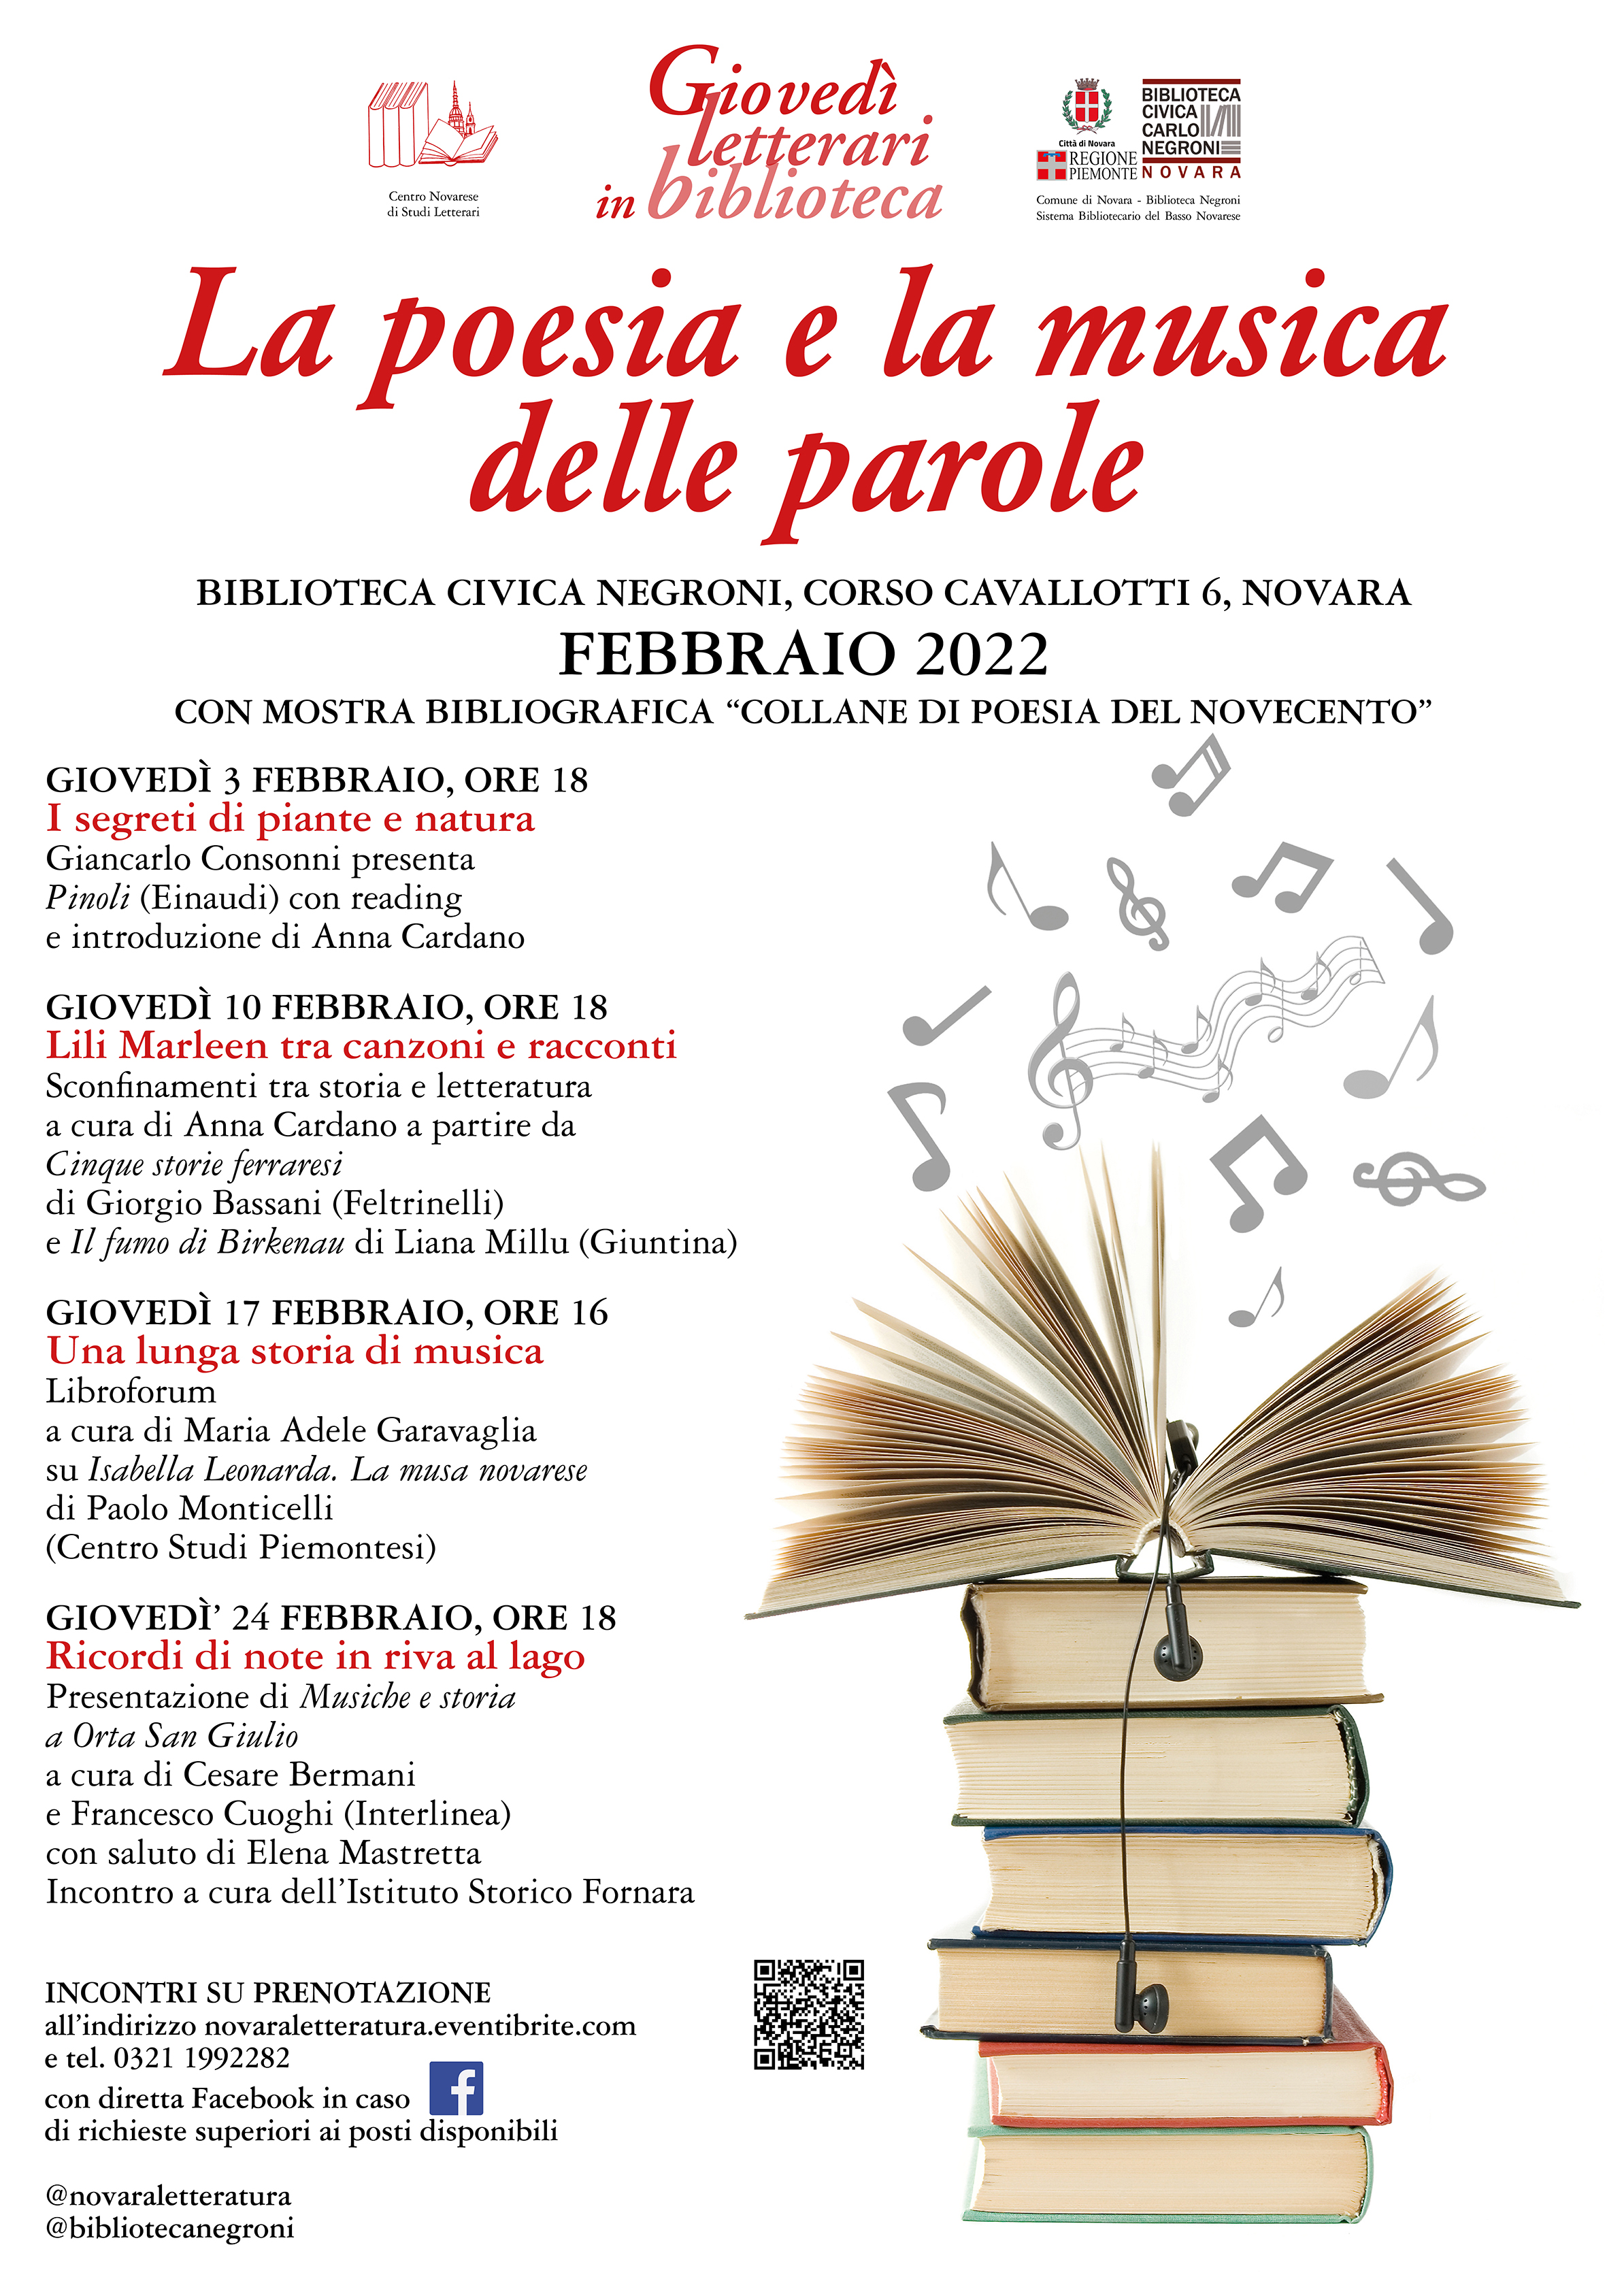 Gioved-letterari-FEBBRAIO 2022 Poesia e musica